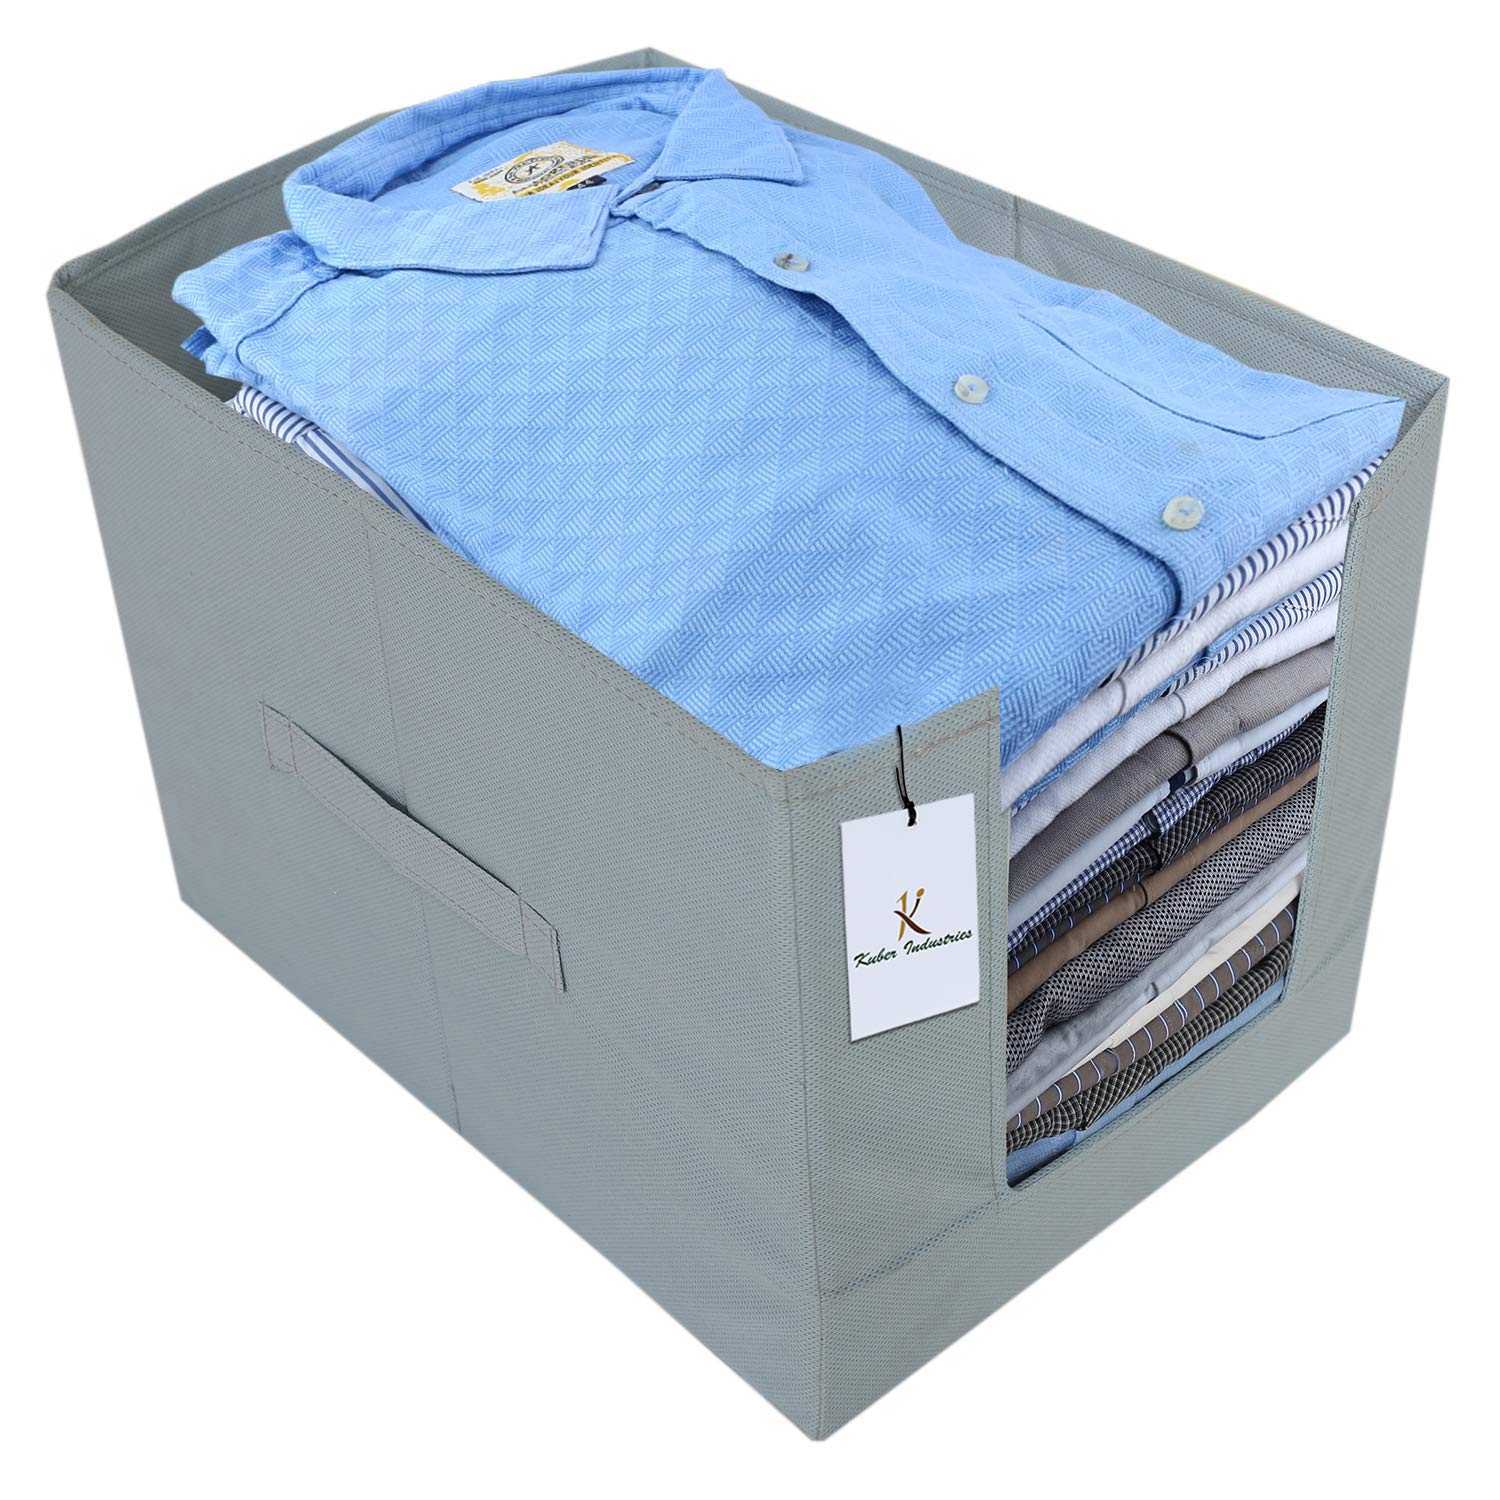 Kuber Industries 2 Piece Non Woven Shirt Stacker Wardrobe Organizer Set, Grey (CTKTC2991)